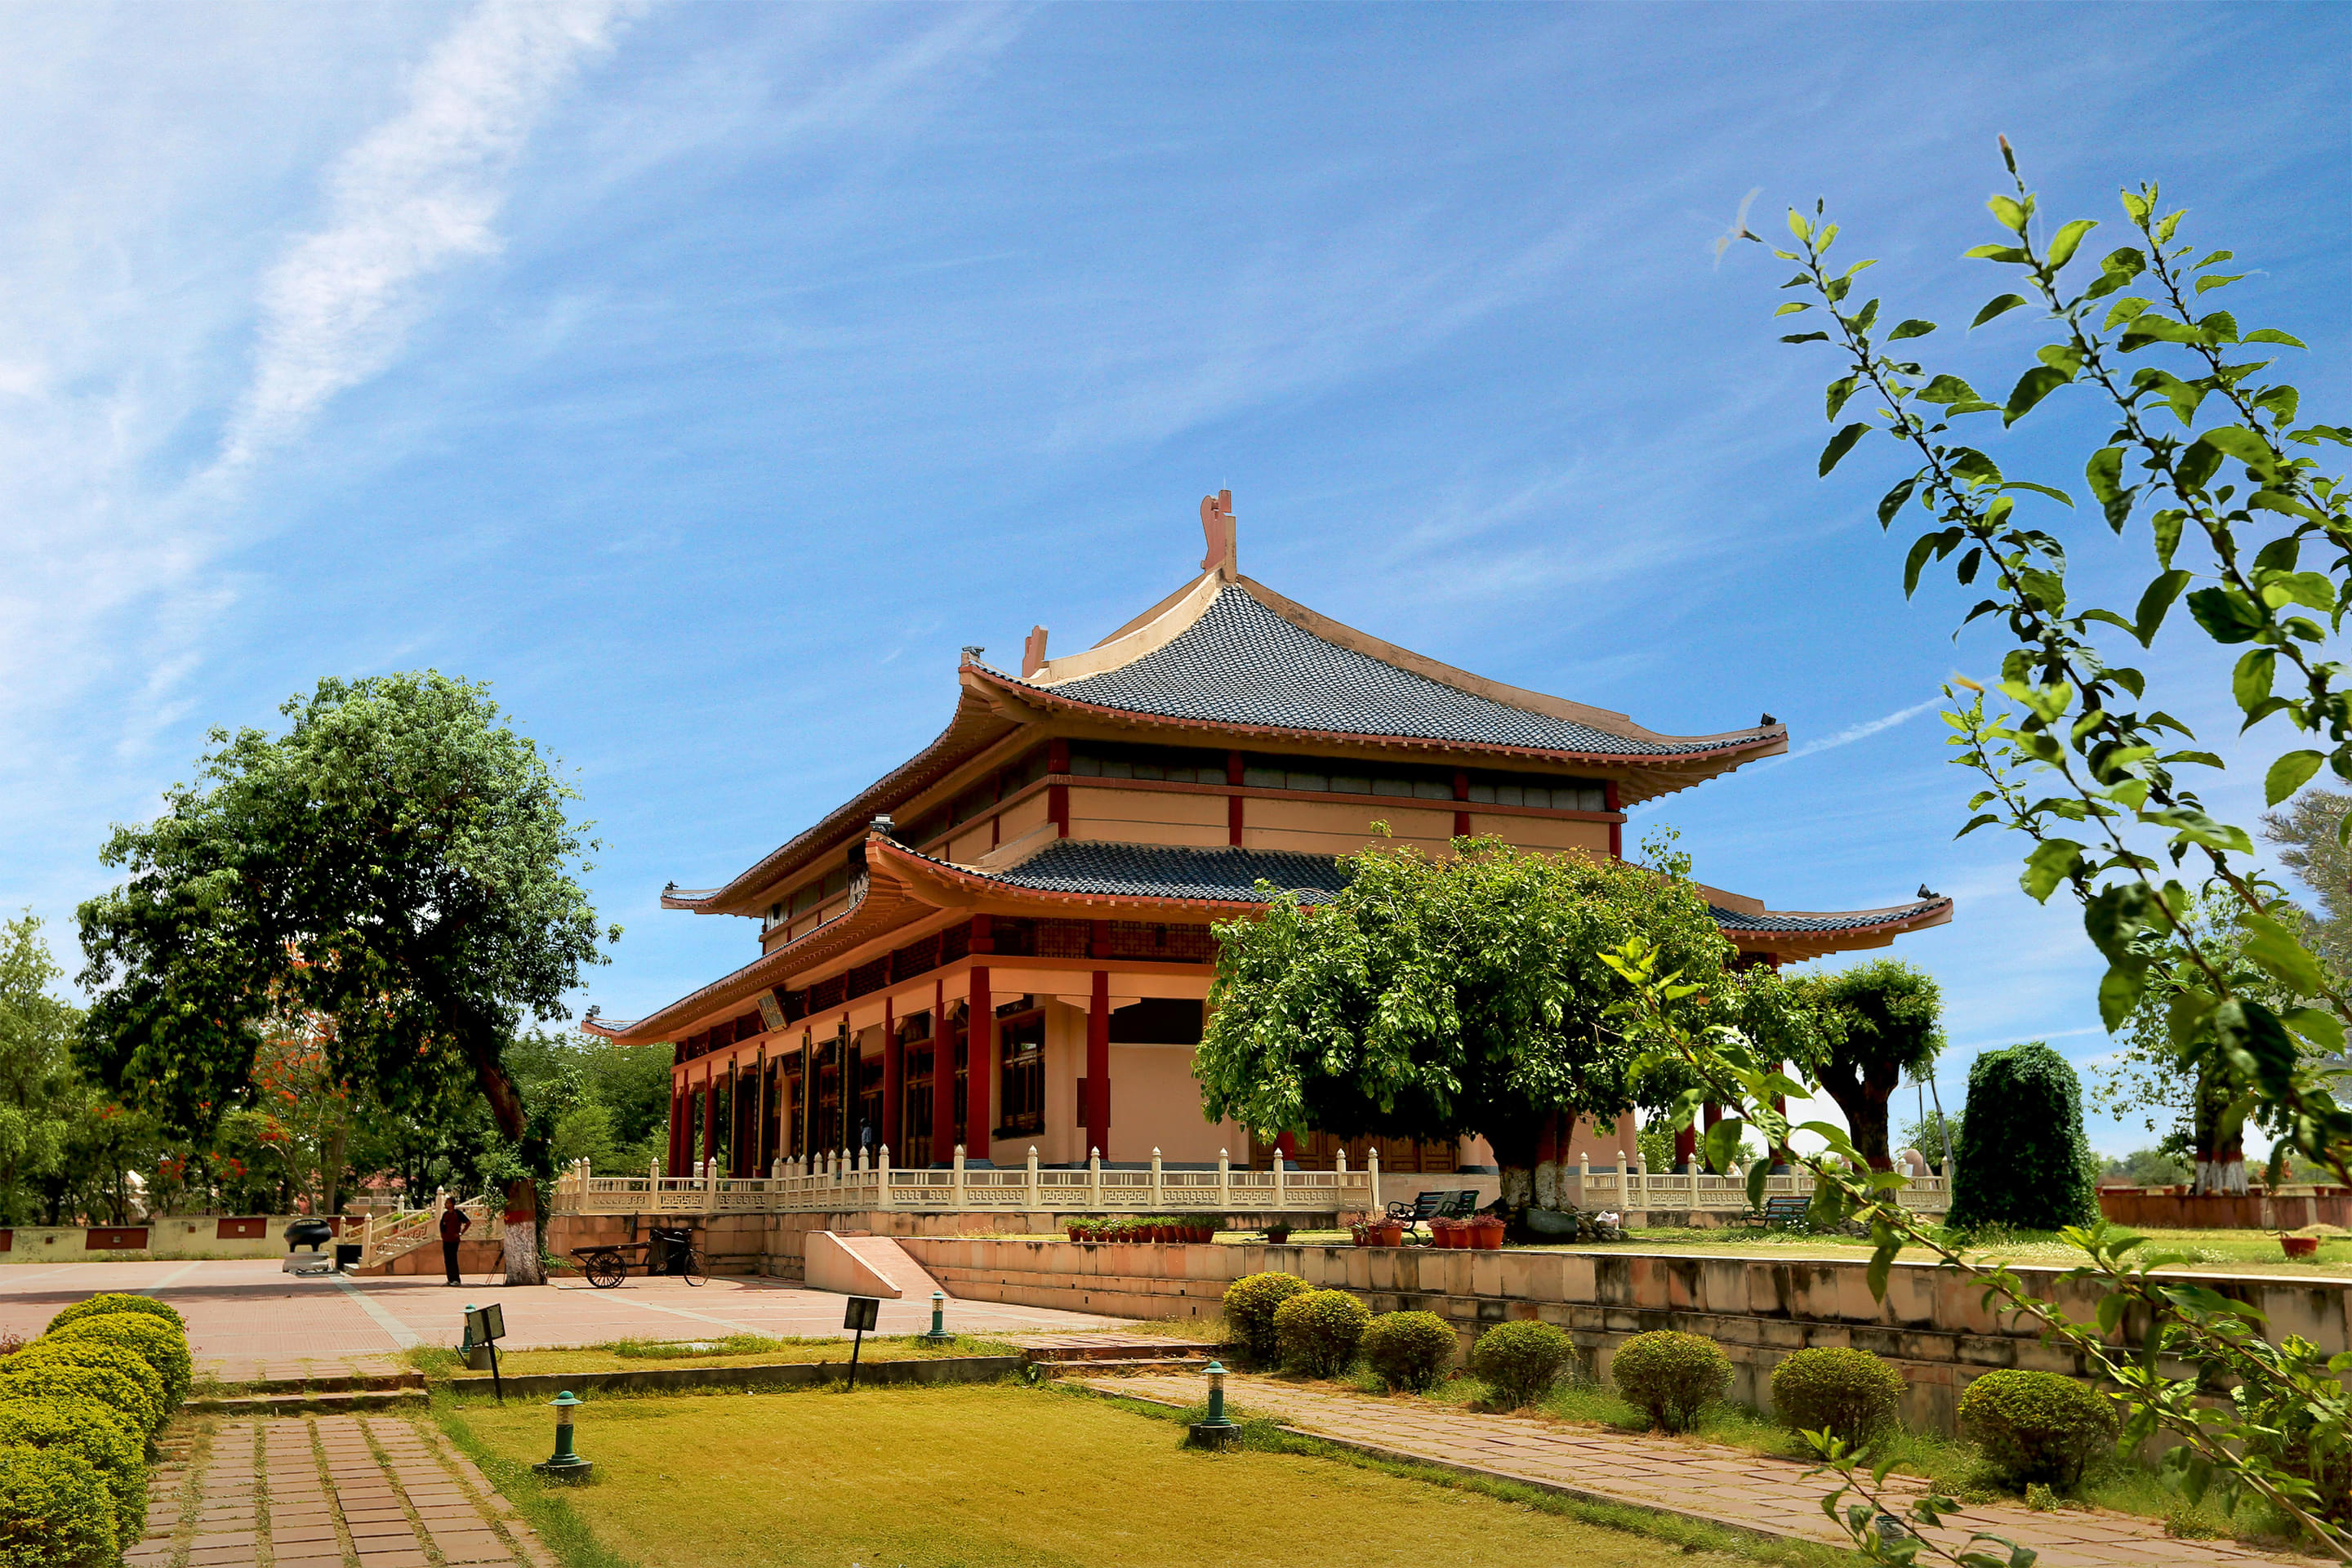 Hieun Tsang Memorial Hall, Nalanda Overview